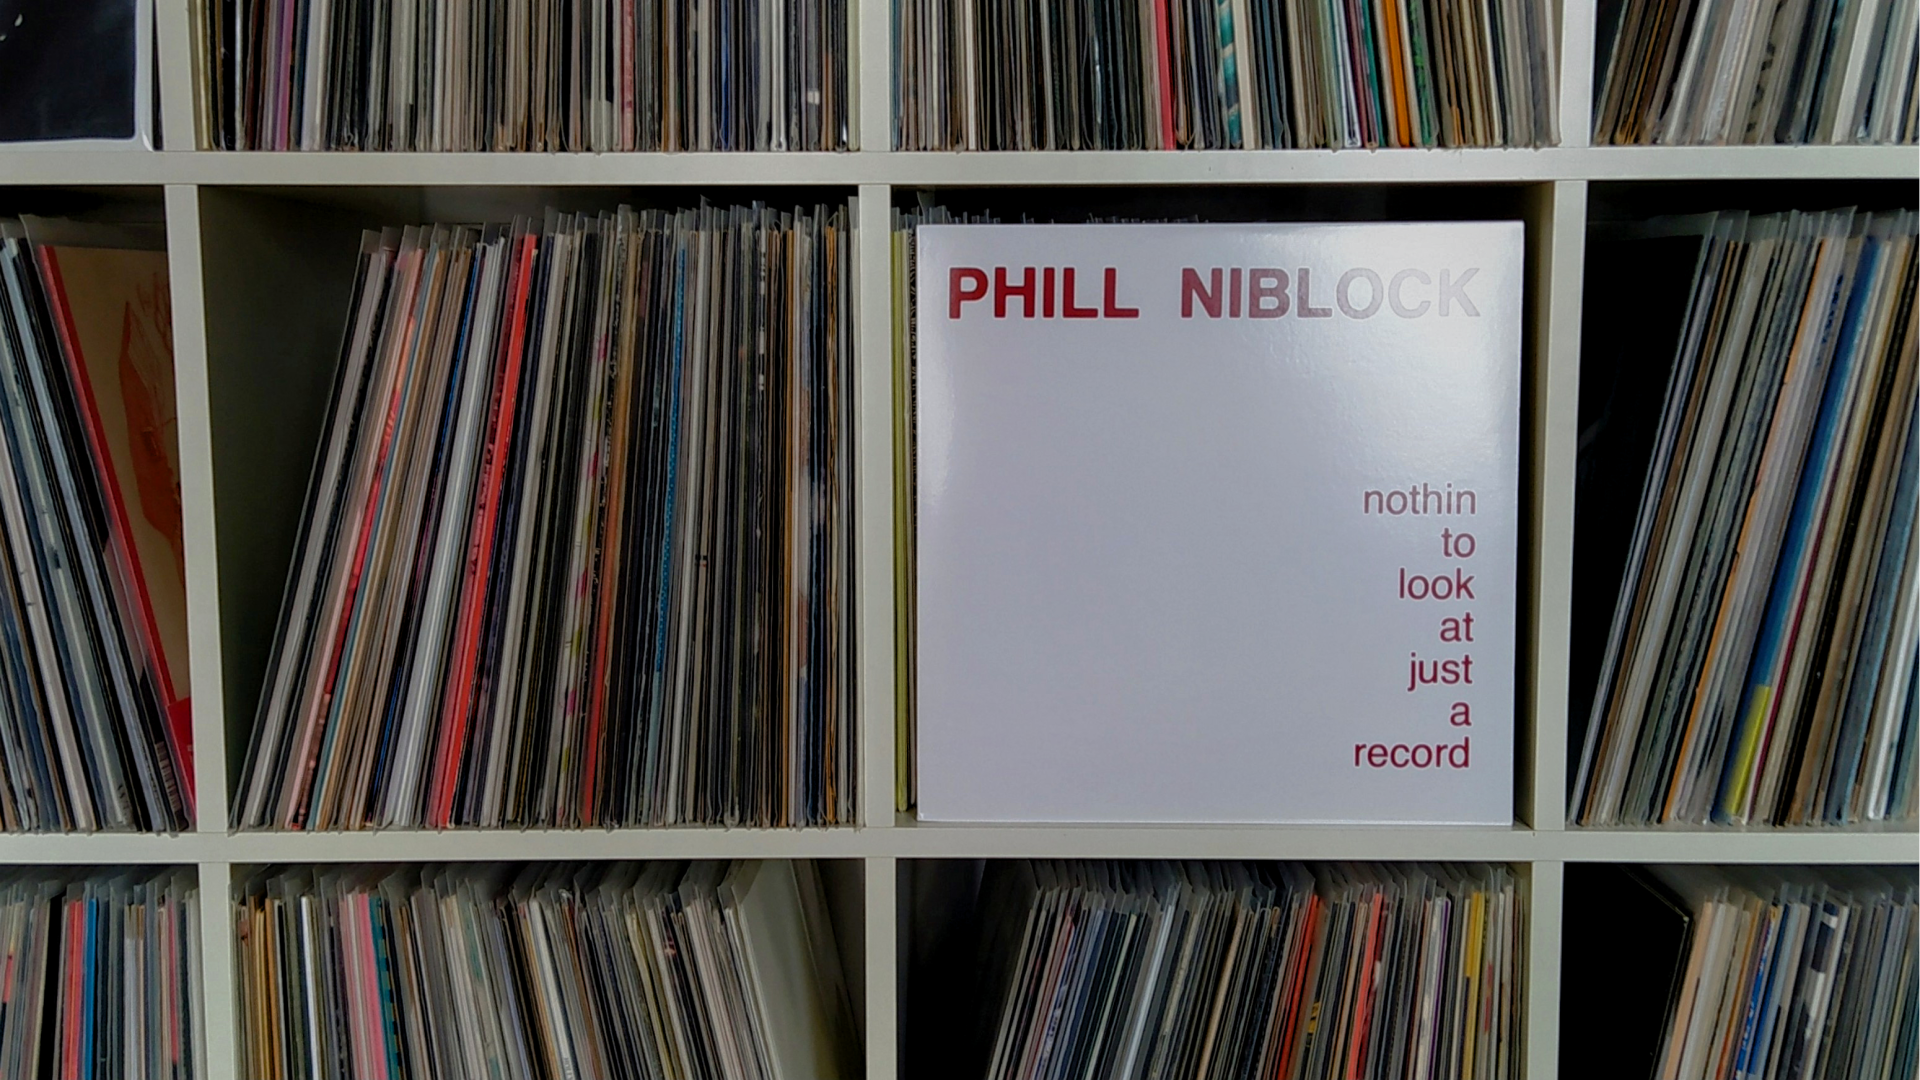 Ein Schrank mit Schallplatten, darin eine Schallplatte von Phill Niblock.